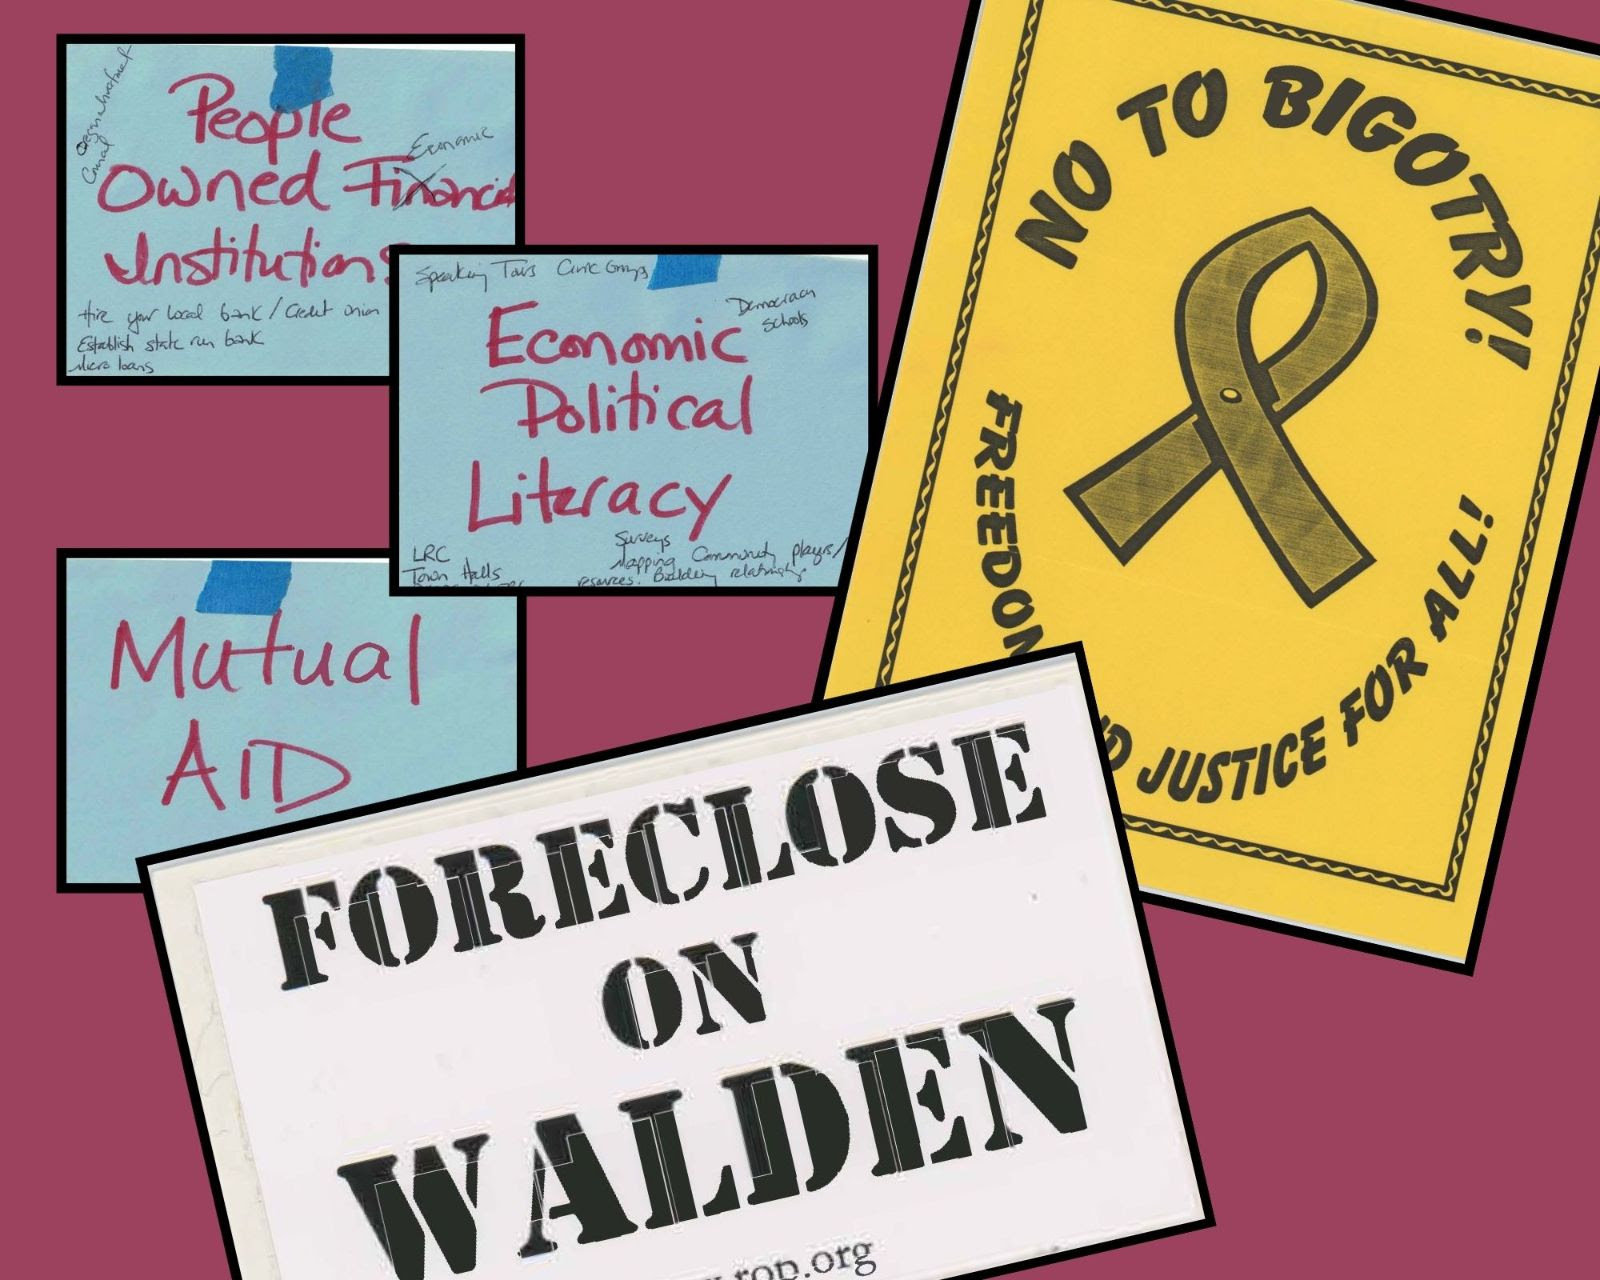 знаки, говорящие о лишении права выкупа Уолдена и нет фанатизму